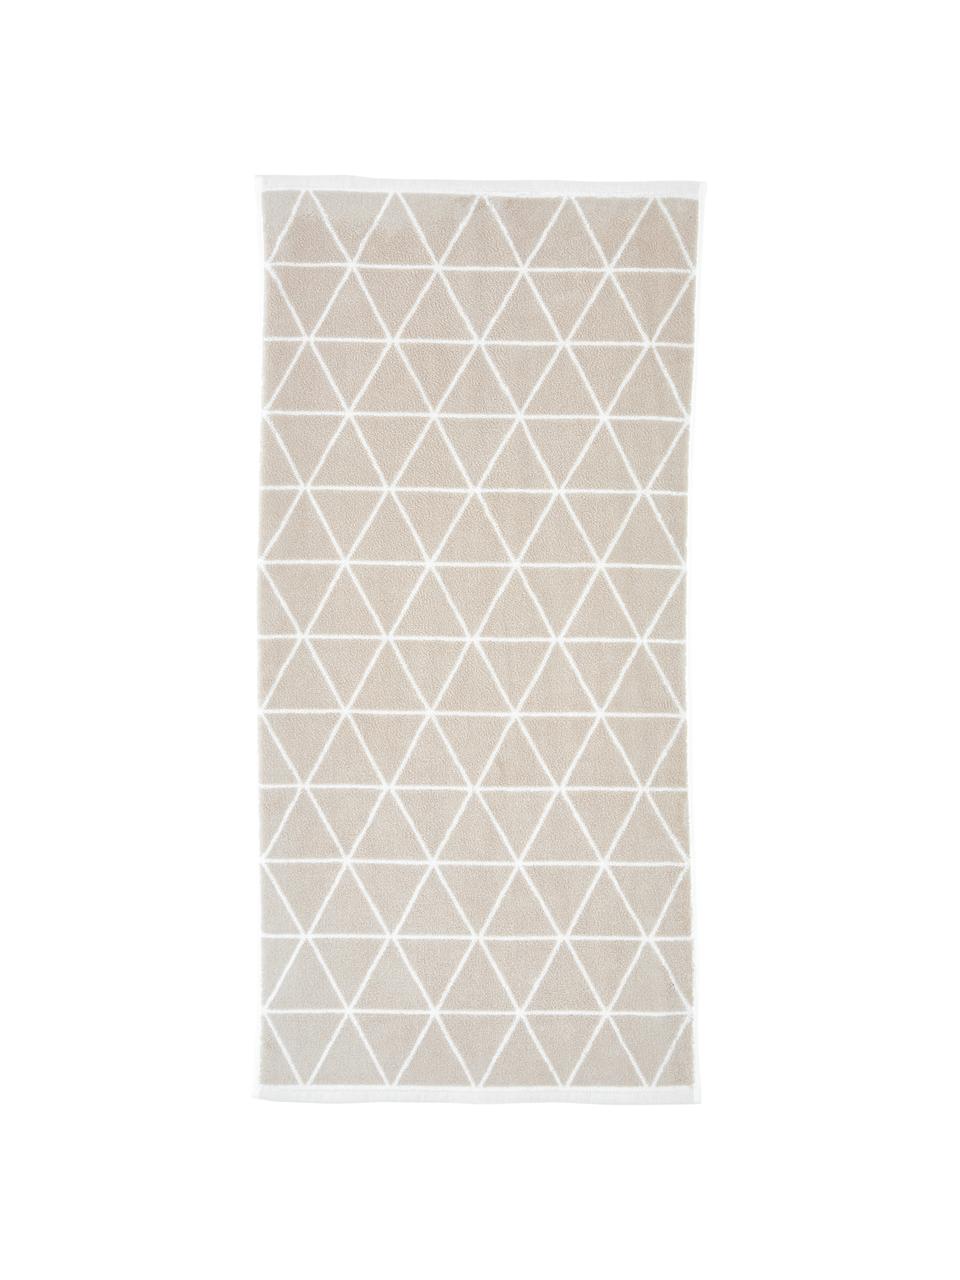 Oboustranný ručník s grafickým vzorem Elina, v různých velikostech, 100% bavlna, střední gramáž 550 g/m², Béžová, tlumeně bílá, Ručník pro hosty, Š 30, D 50 cm, 2 ks